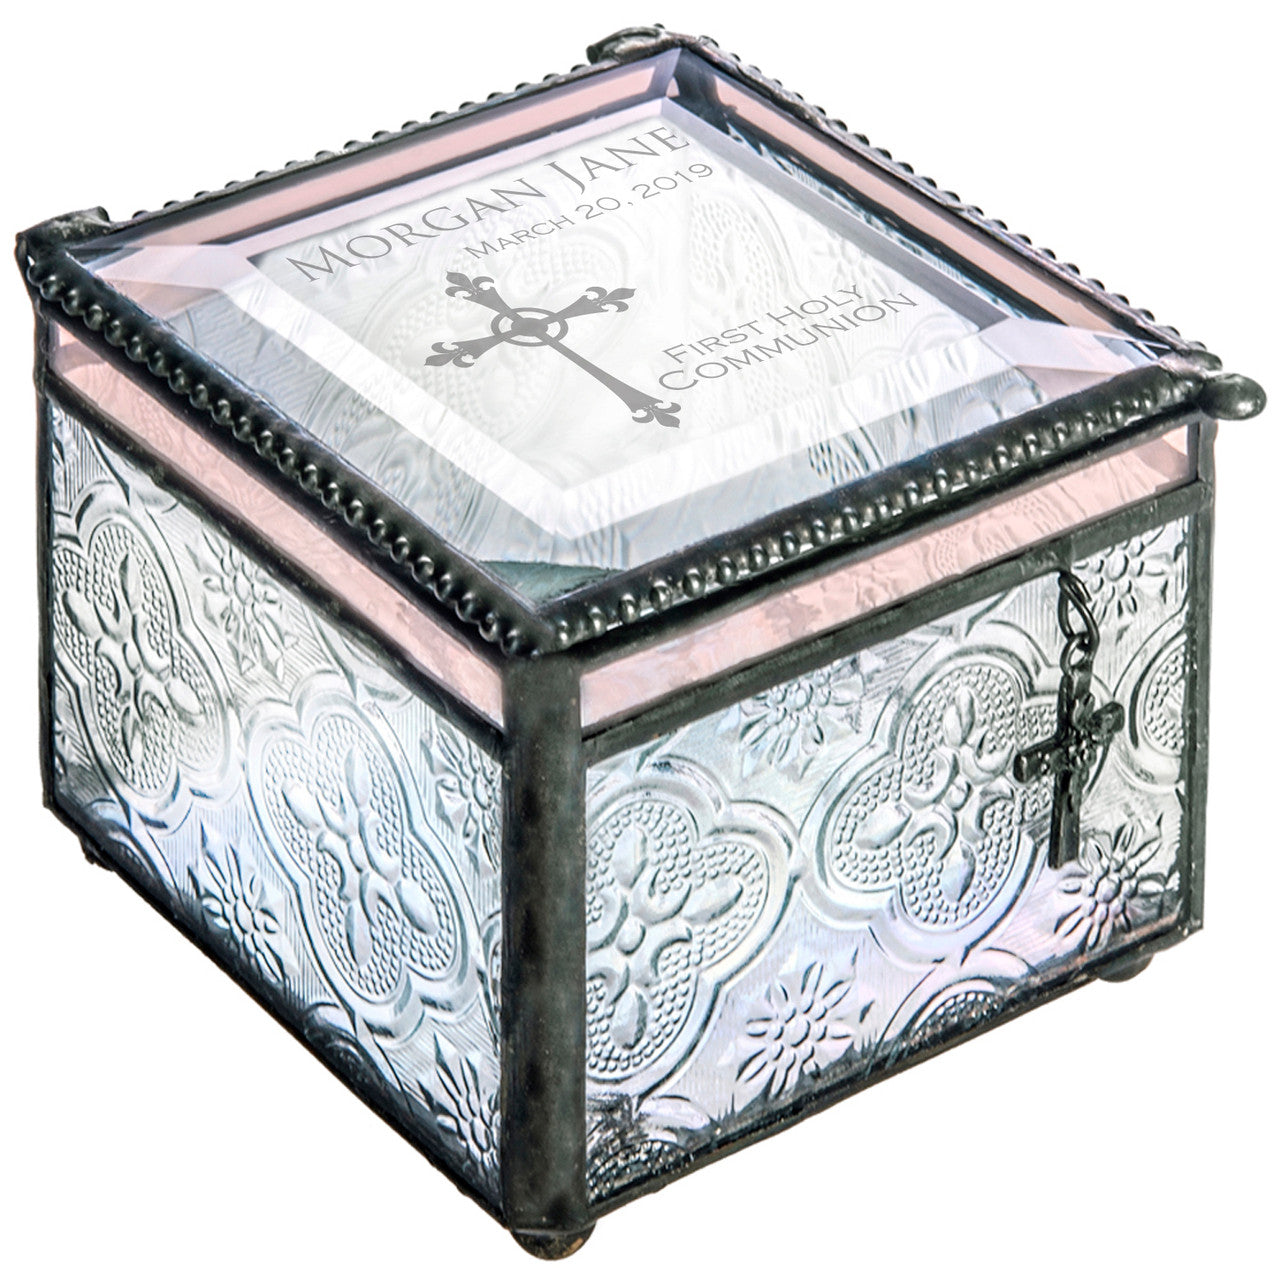 1st Communion Gift Personalized | Box 631 EB220